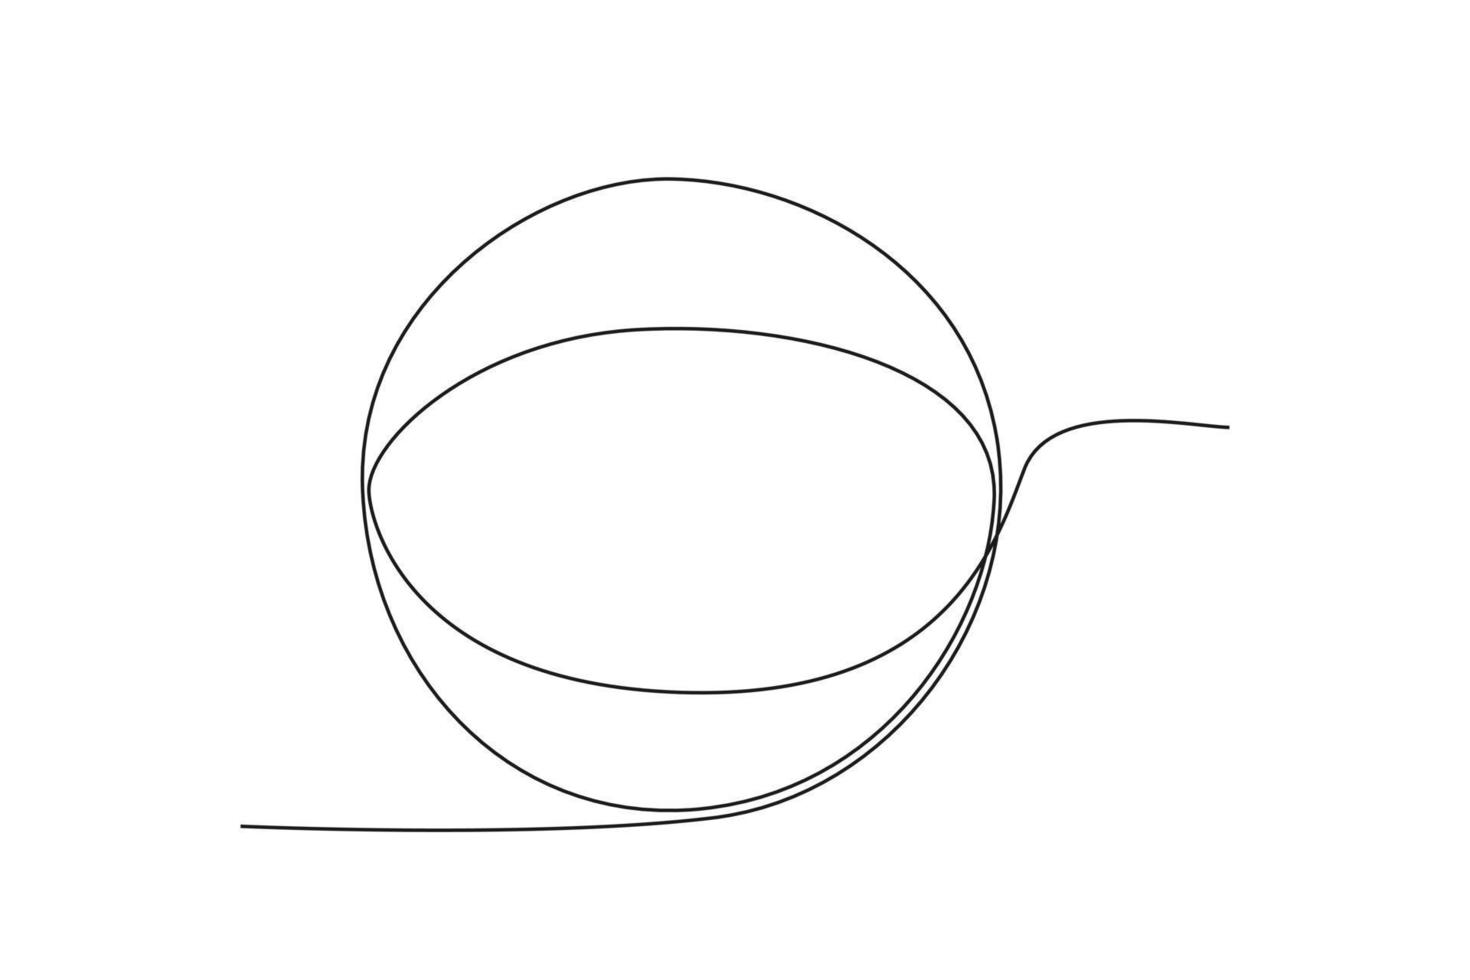 Single einer Linie Zeichnung ein Kugel. geometrisch Formen Konzept. kontinuierlich Linie zeichnen Design Grafik Vektor Illustration.